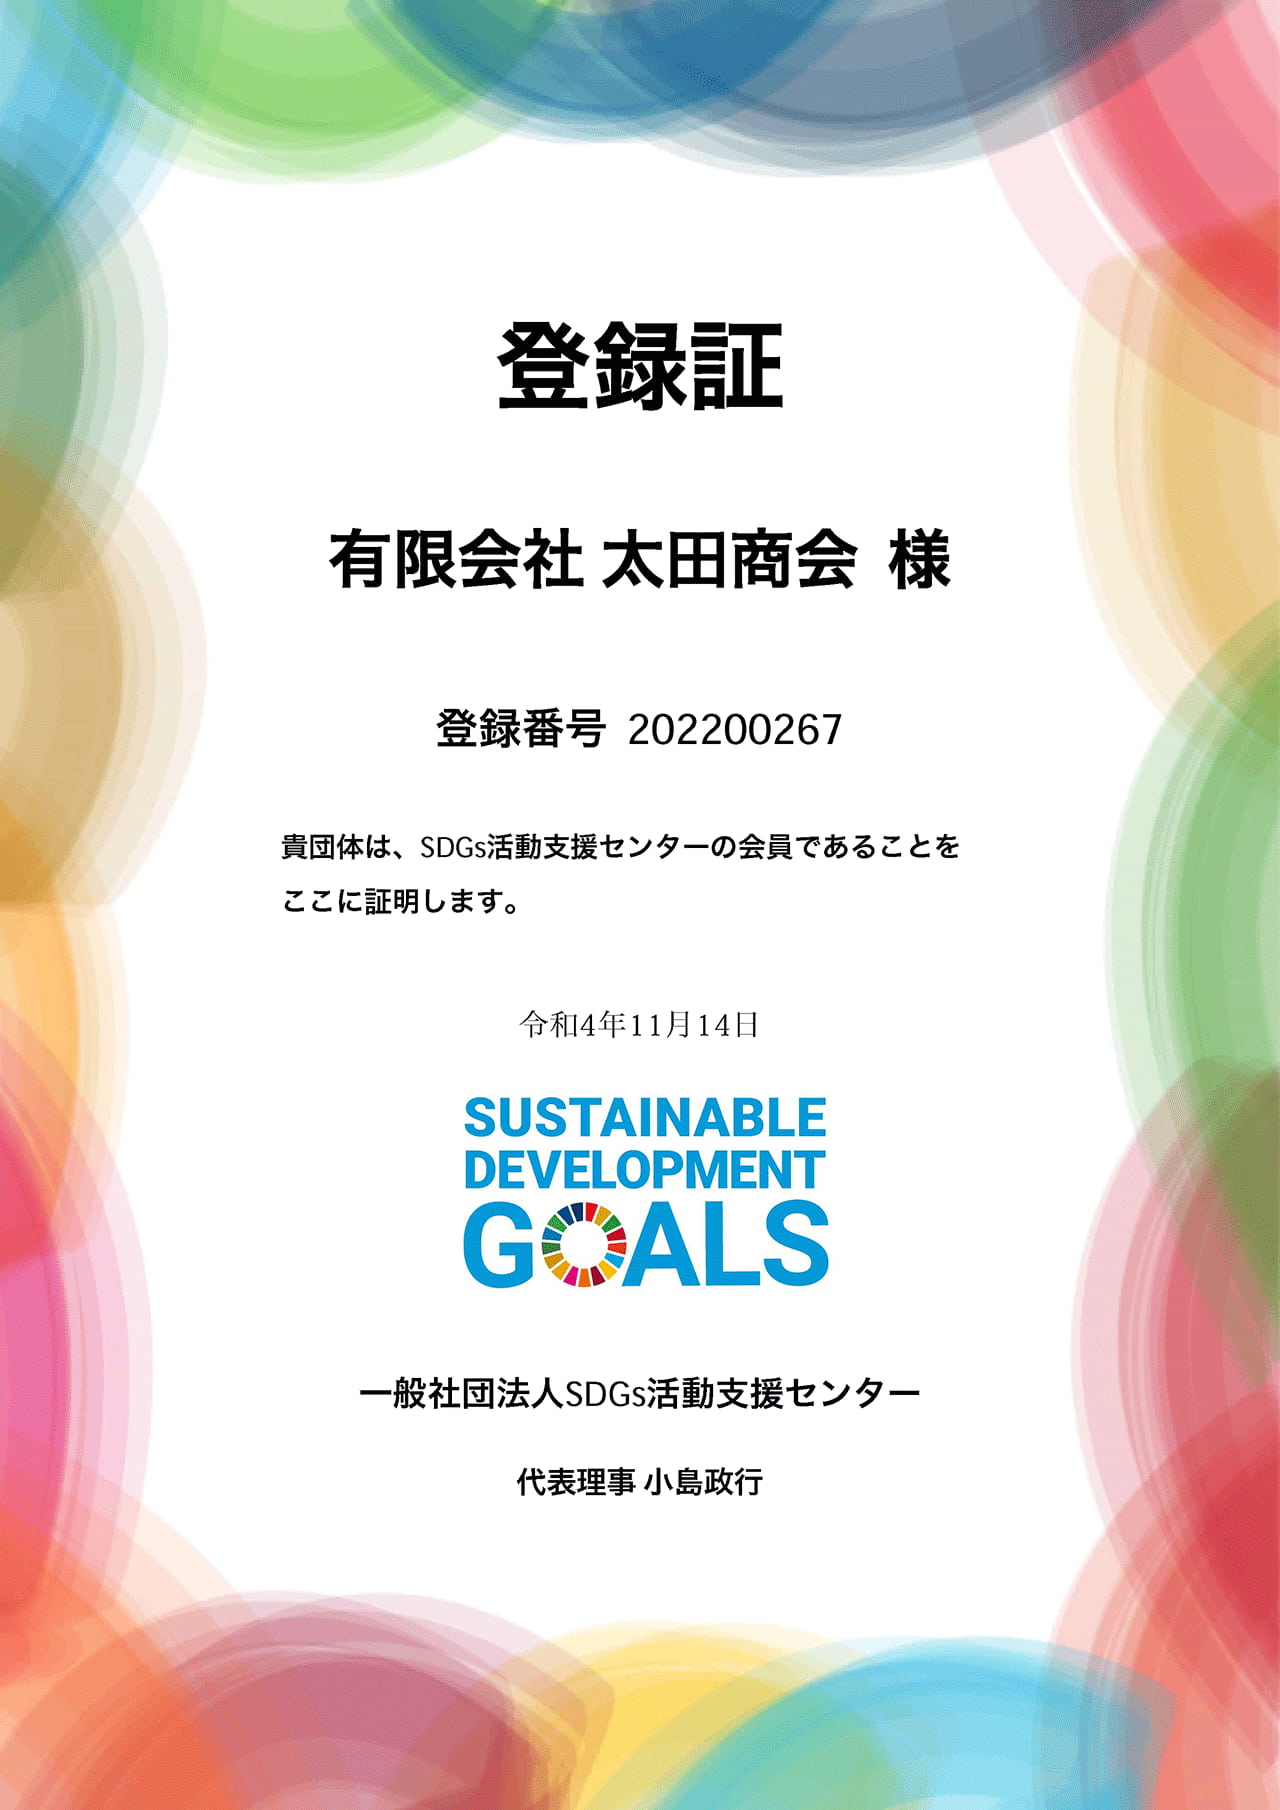 一般社団法人SDGs活動支援センターより発行された会員証明・登録証